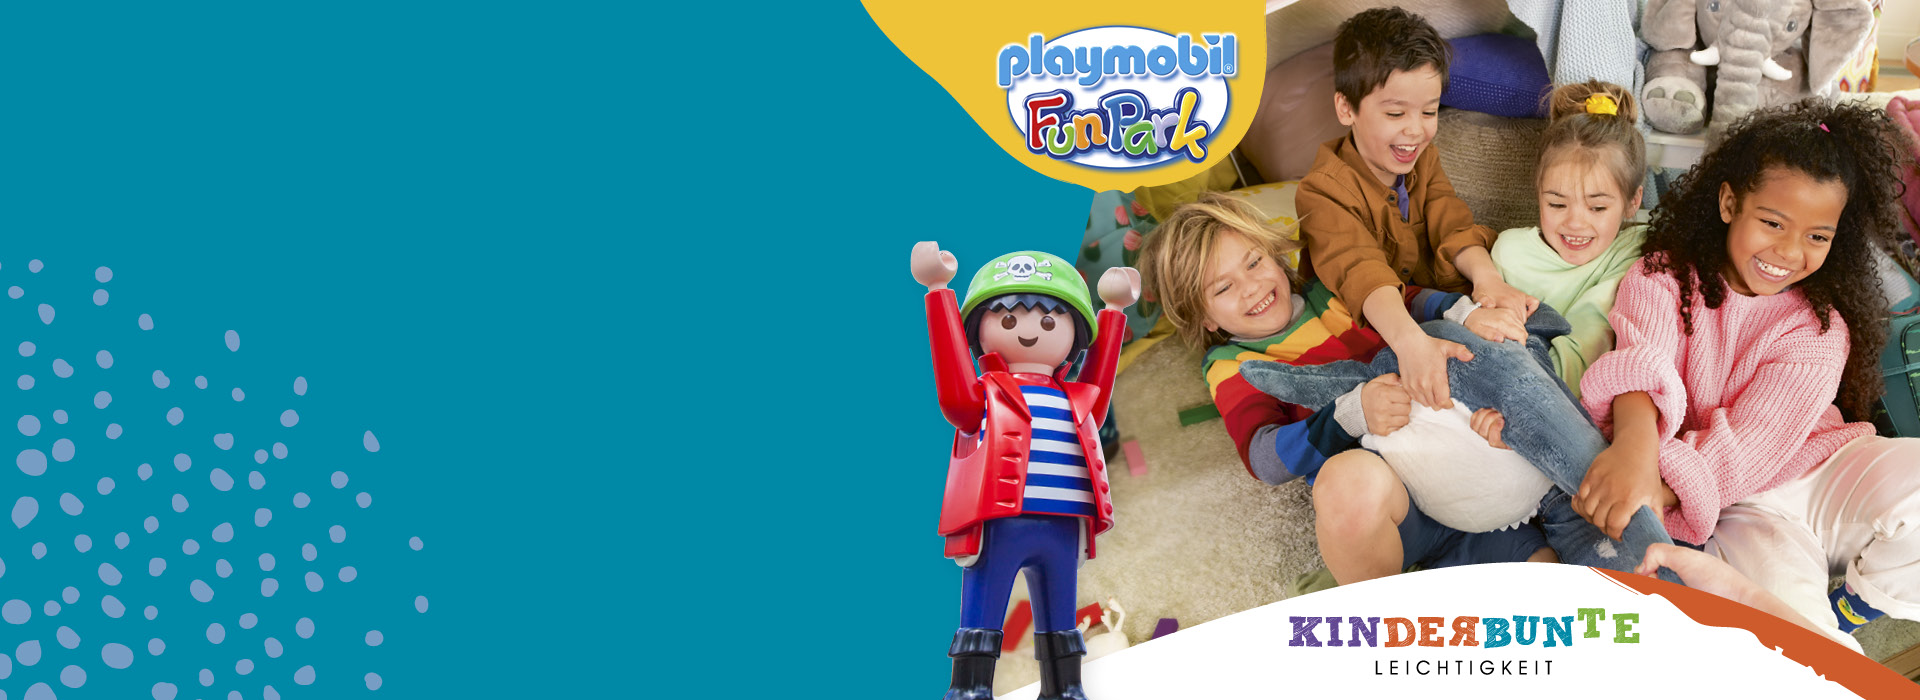 Mach mit beim kinderbunten Gewinnspiel mit Playmobil